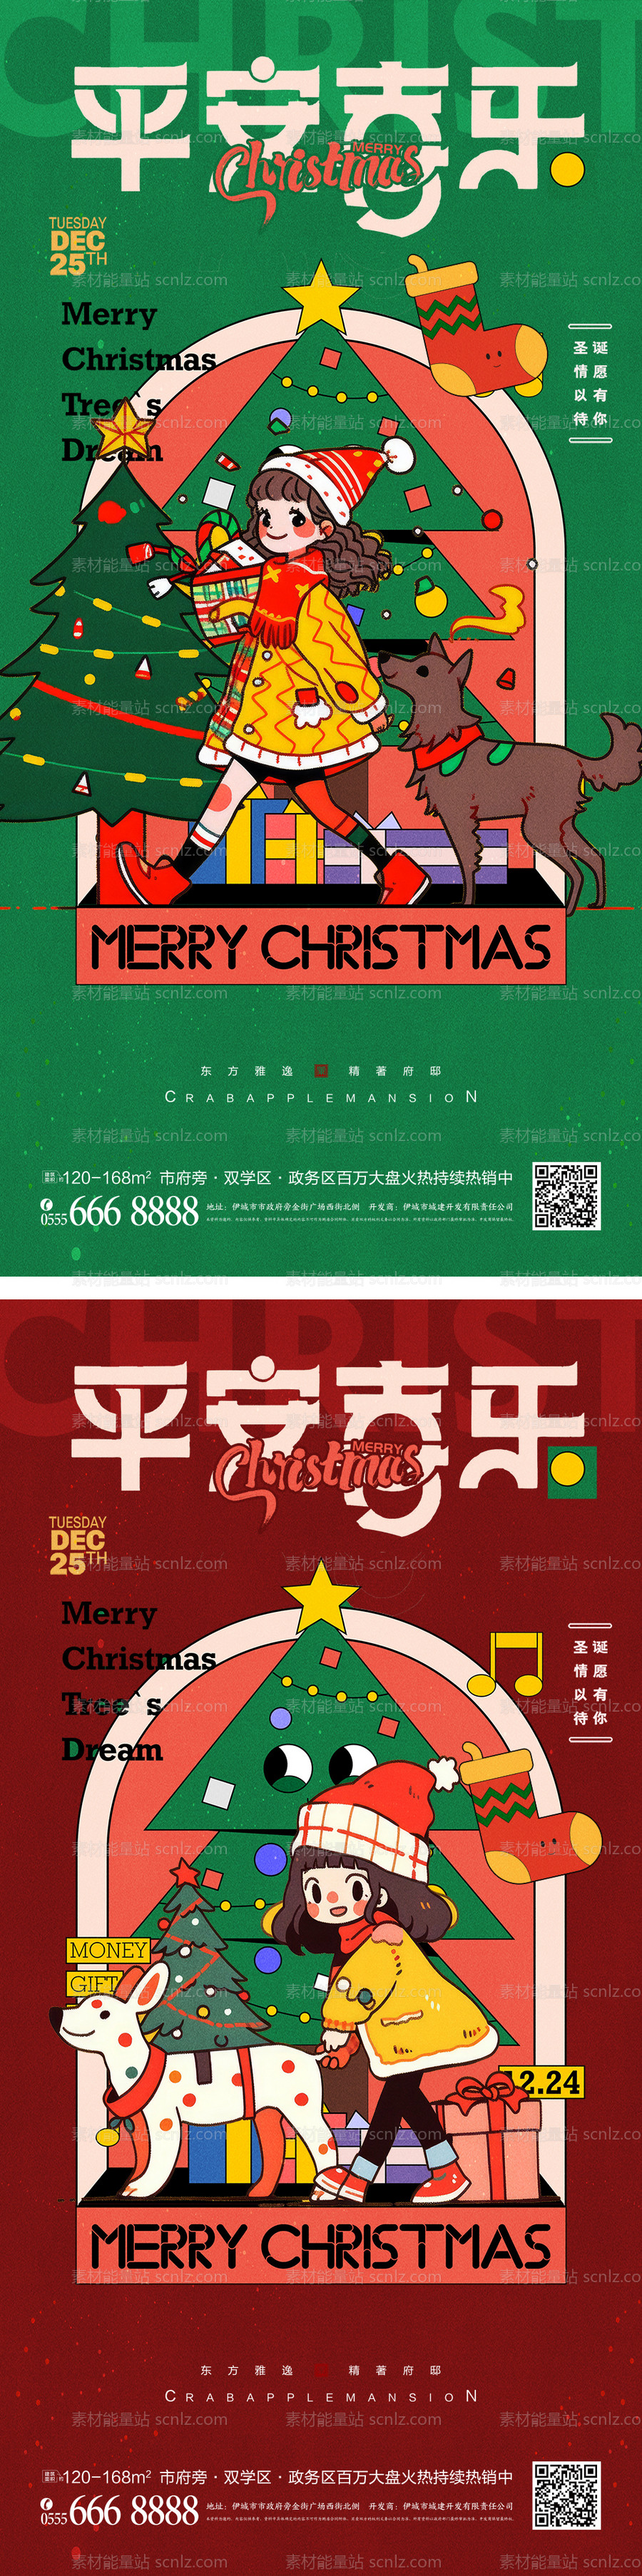 素材能量站-圣诞节圣诞树插画促销海报